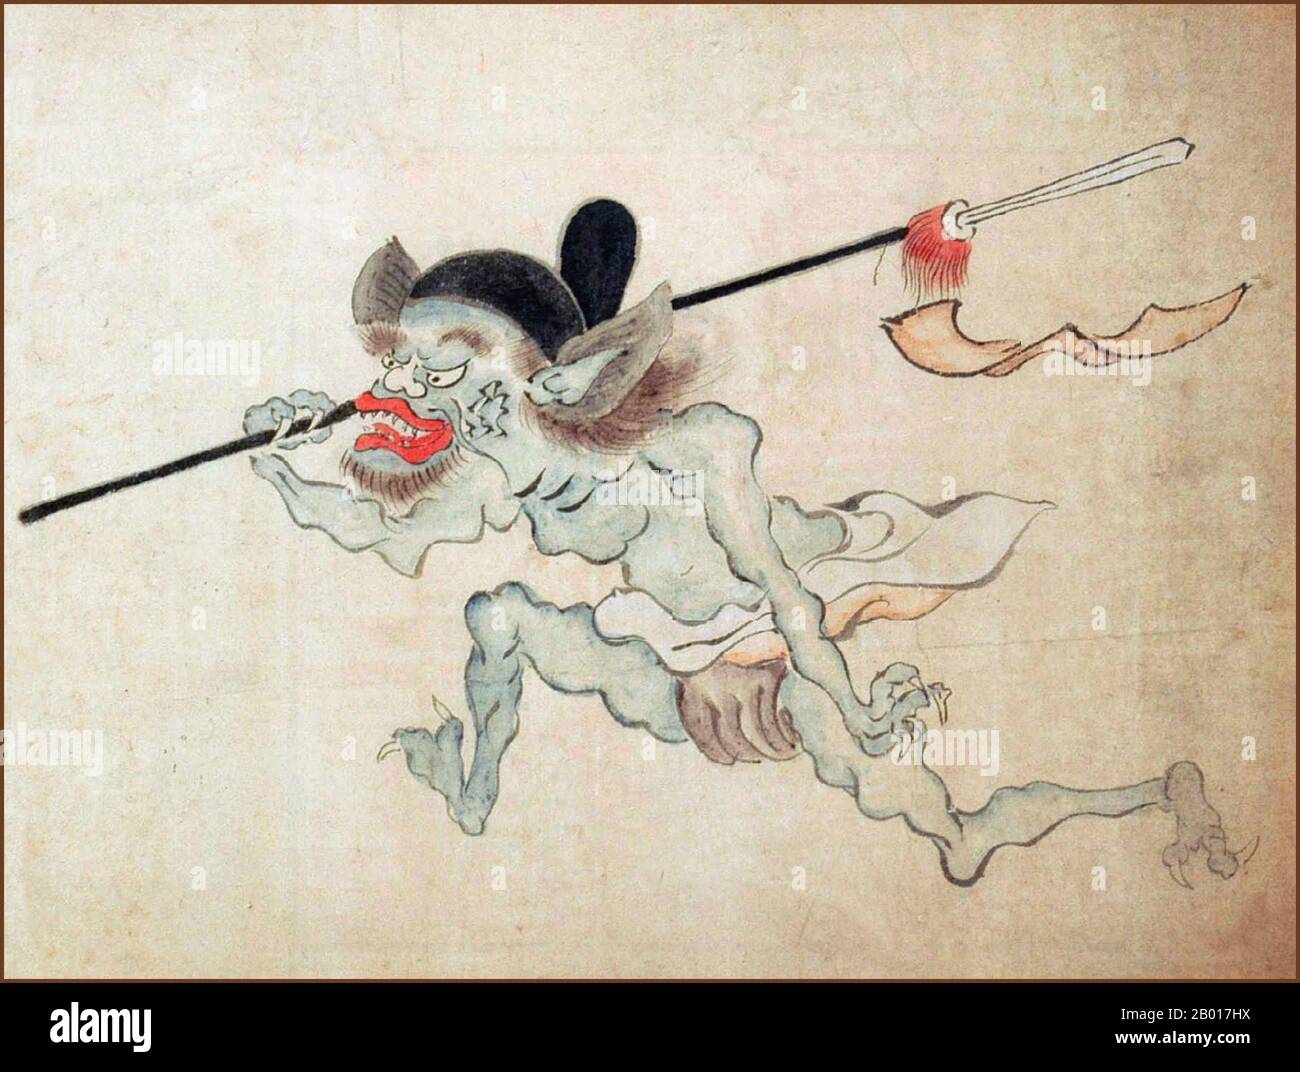 Japón: 'Hyakki Yako (Desfile nocturno de cien demonios)'. Detalle de la pintura de mano, siglo 19th. Hyakki Yagyo/Hyakki Yako ('Desfile nocturno de cien demonios') es una creencia popular japonesa. La creencia sostiene que cada año yokai, seres sobrenaturales japoneses, tomarán las calles durante las noches de verano. La procesión es a veces ordenada, mientras que en otras ocasiones es un motín. Cualquiera que se cruce con la procesión morirá, a menos que esté protegido por algún sutra budista. Es un tema popular en el arte visual japonés Foto de stock